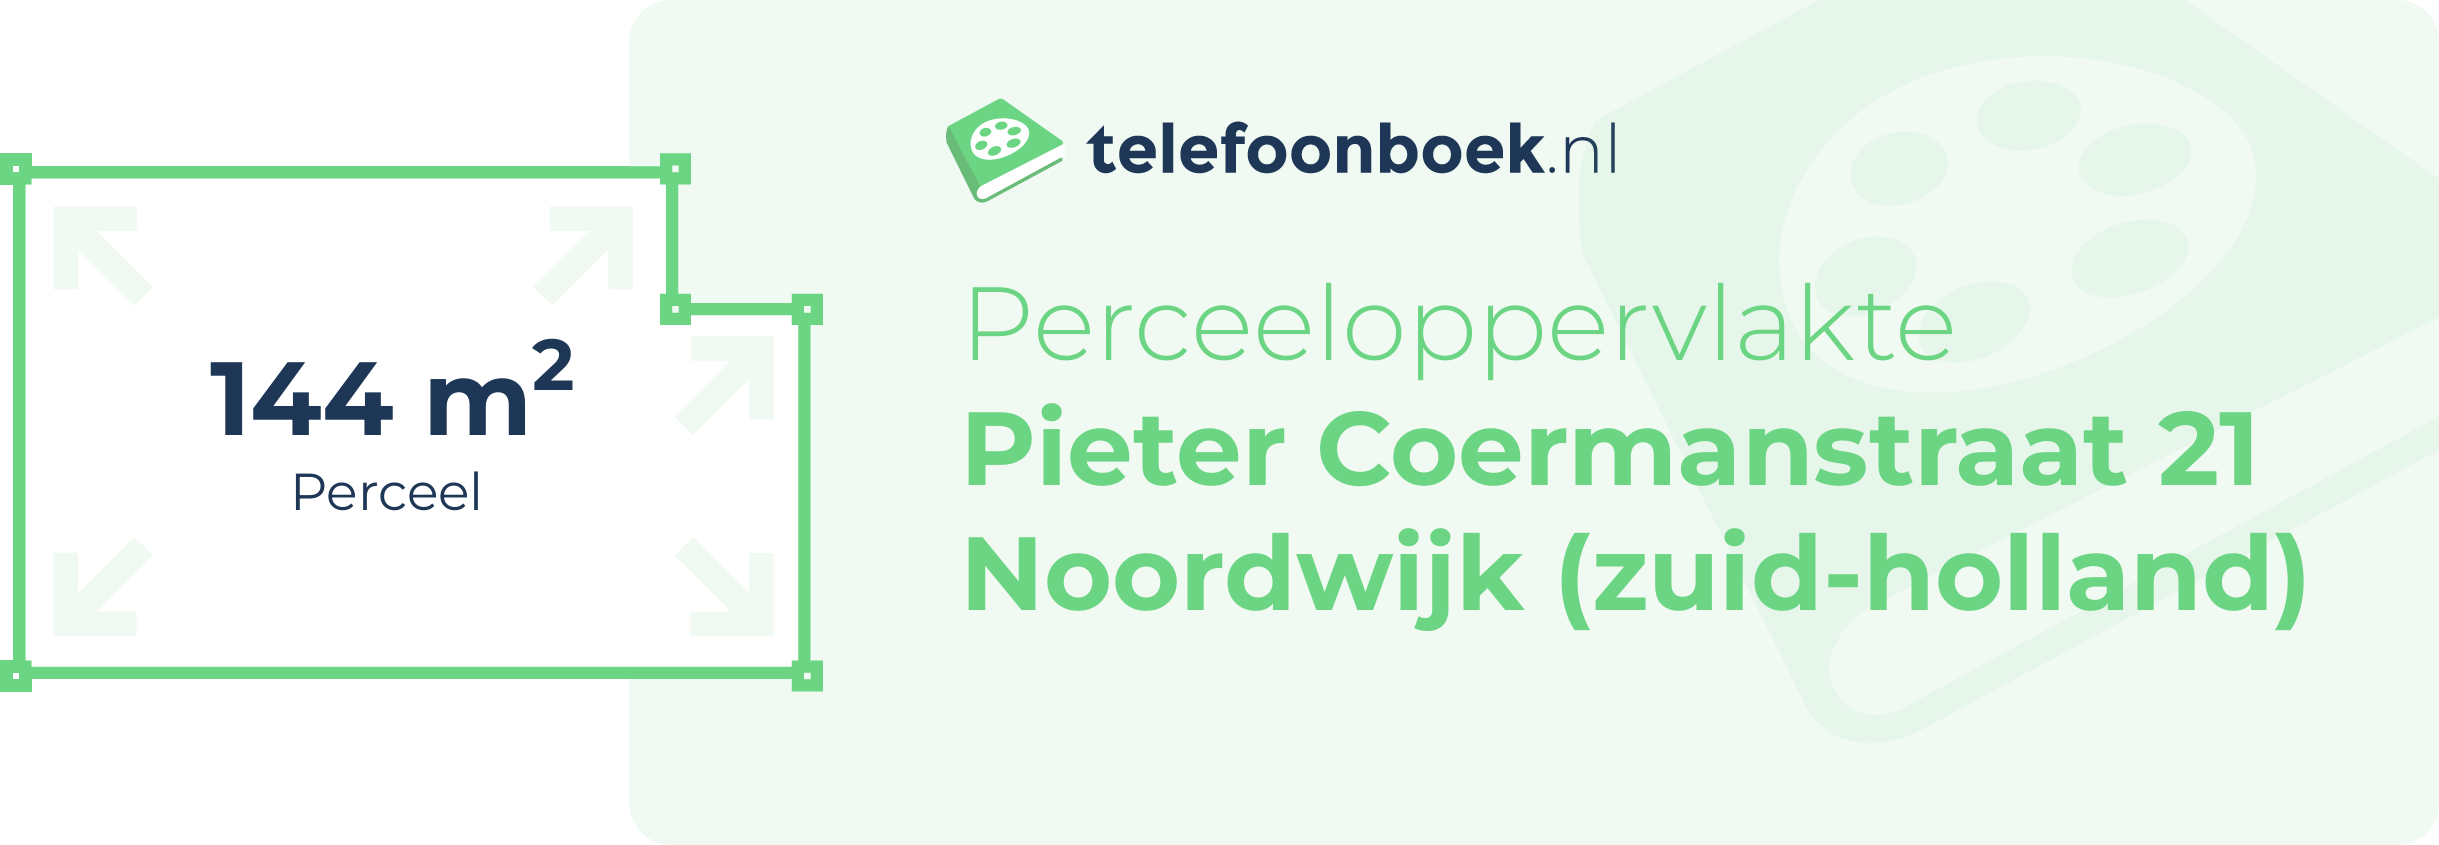 Perceeloppervlakte Pieter Coermanstraat 21 Noordwijk (Zuid-Holland)